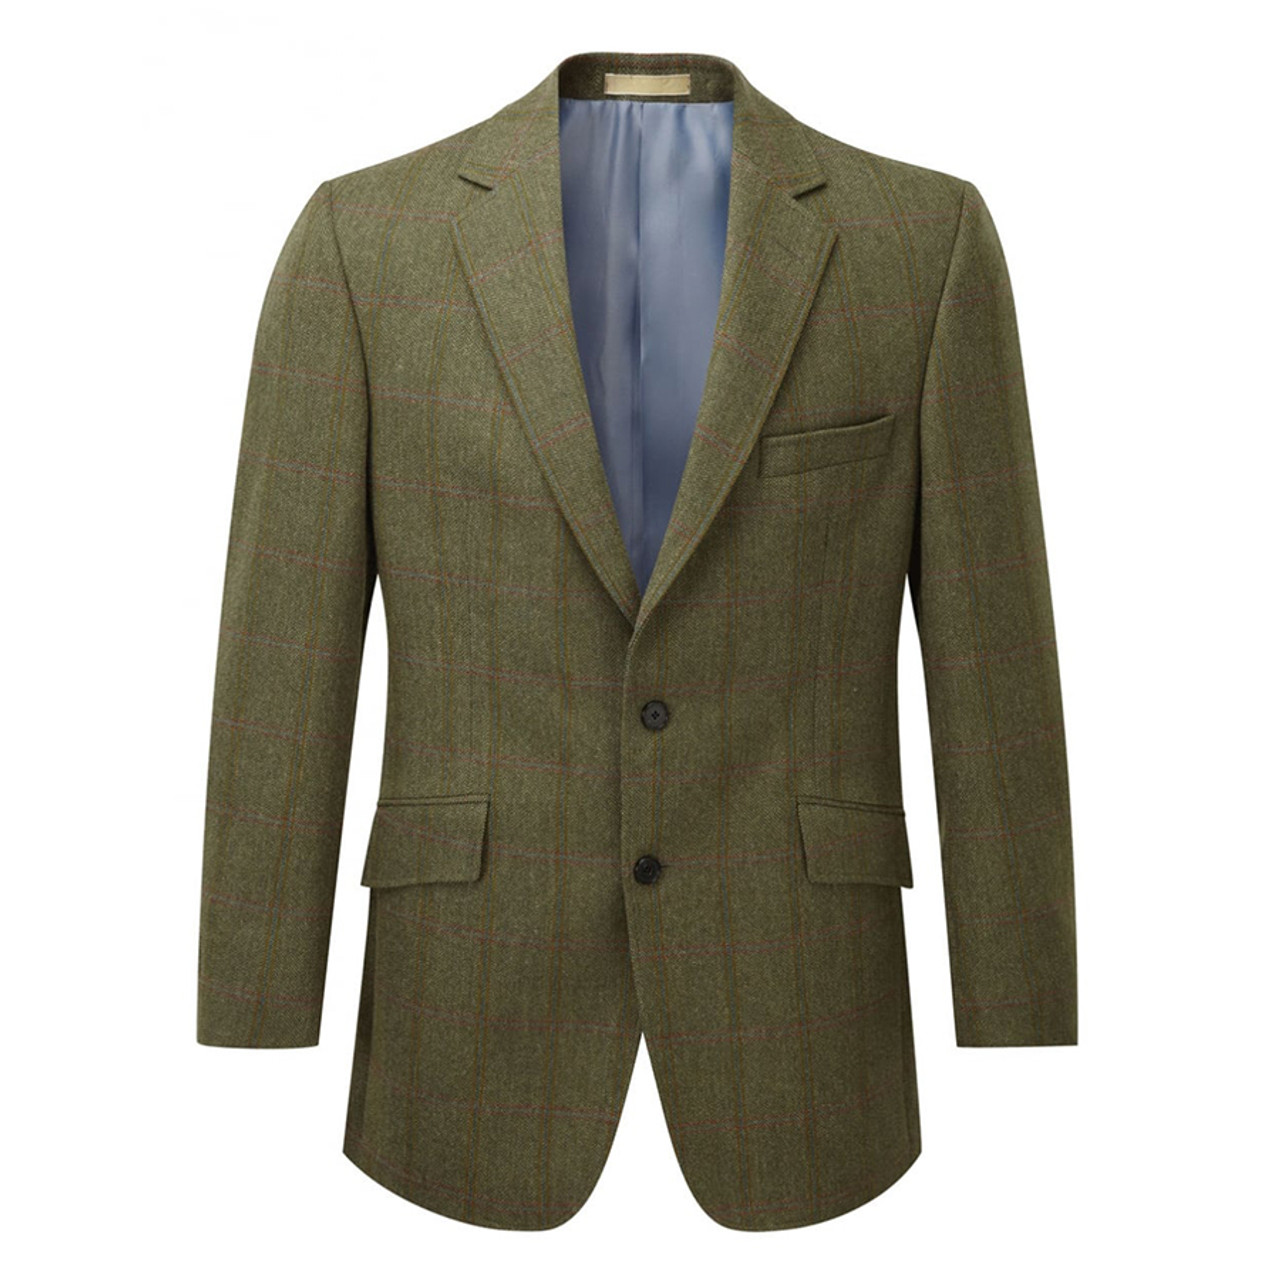 Voorschrijven Meevoelen veld Belgrave Tweed Sports Jacket38163 - Gordy & Sons Outfitters